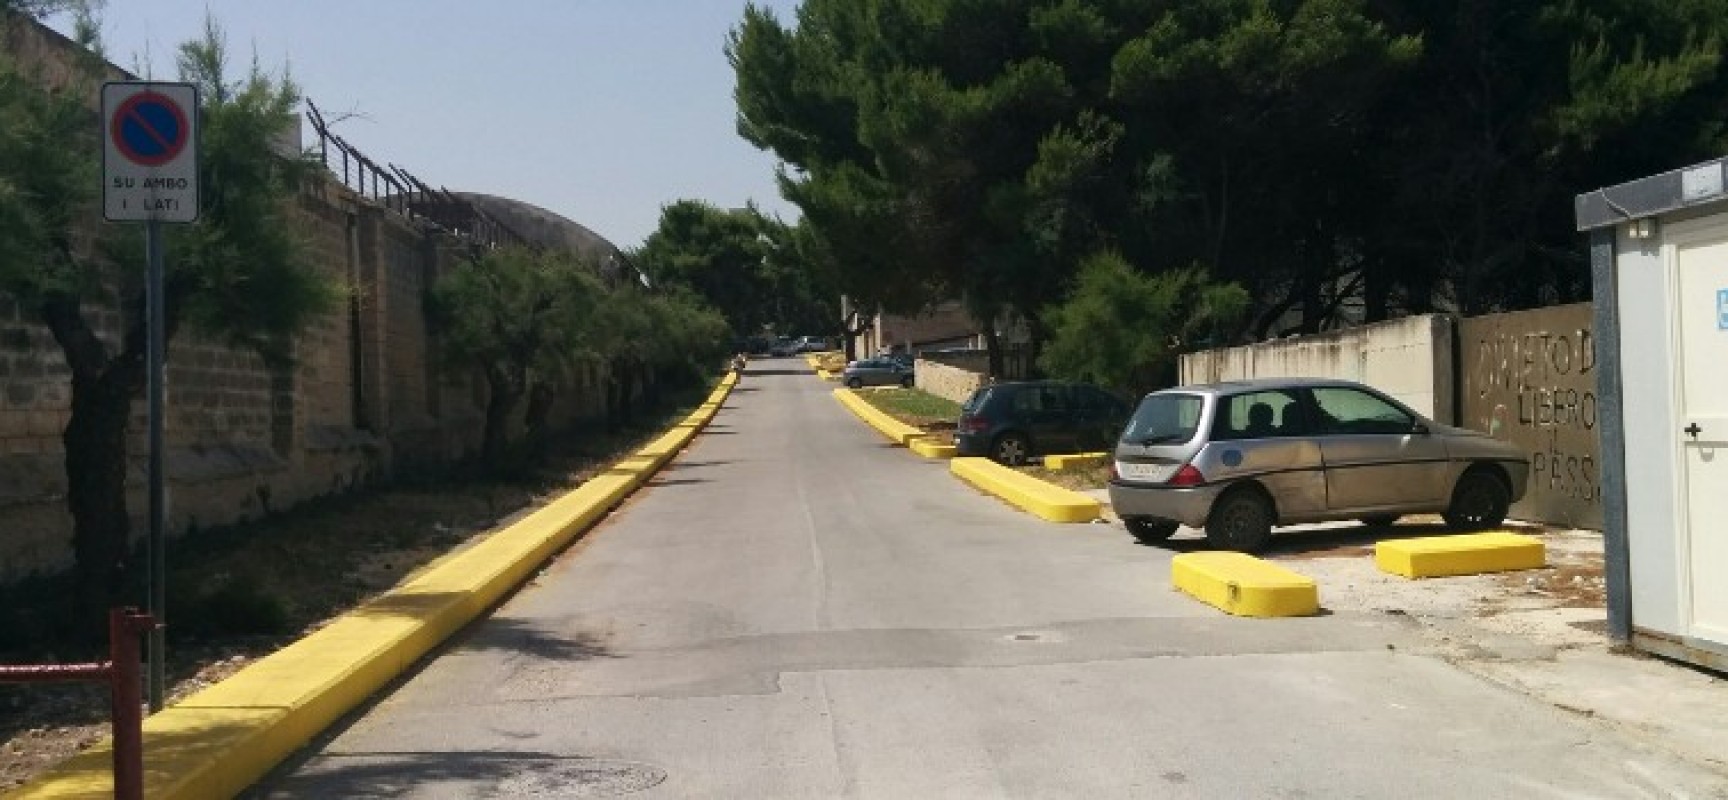 Dissuasori anti parcheggio abusivo in Carrara Camposanto, ma i bagnanti ci vanno lo stesso